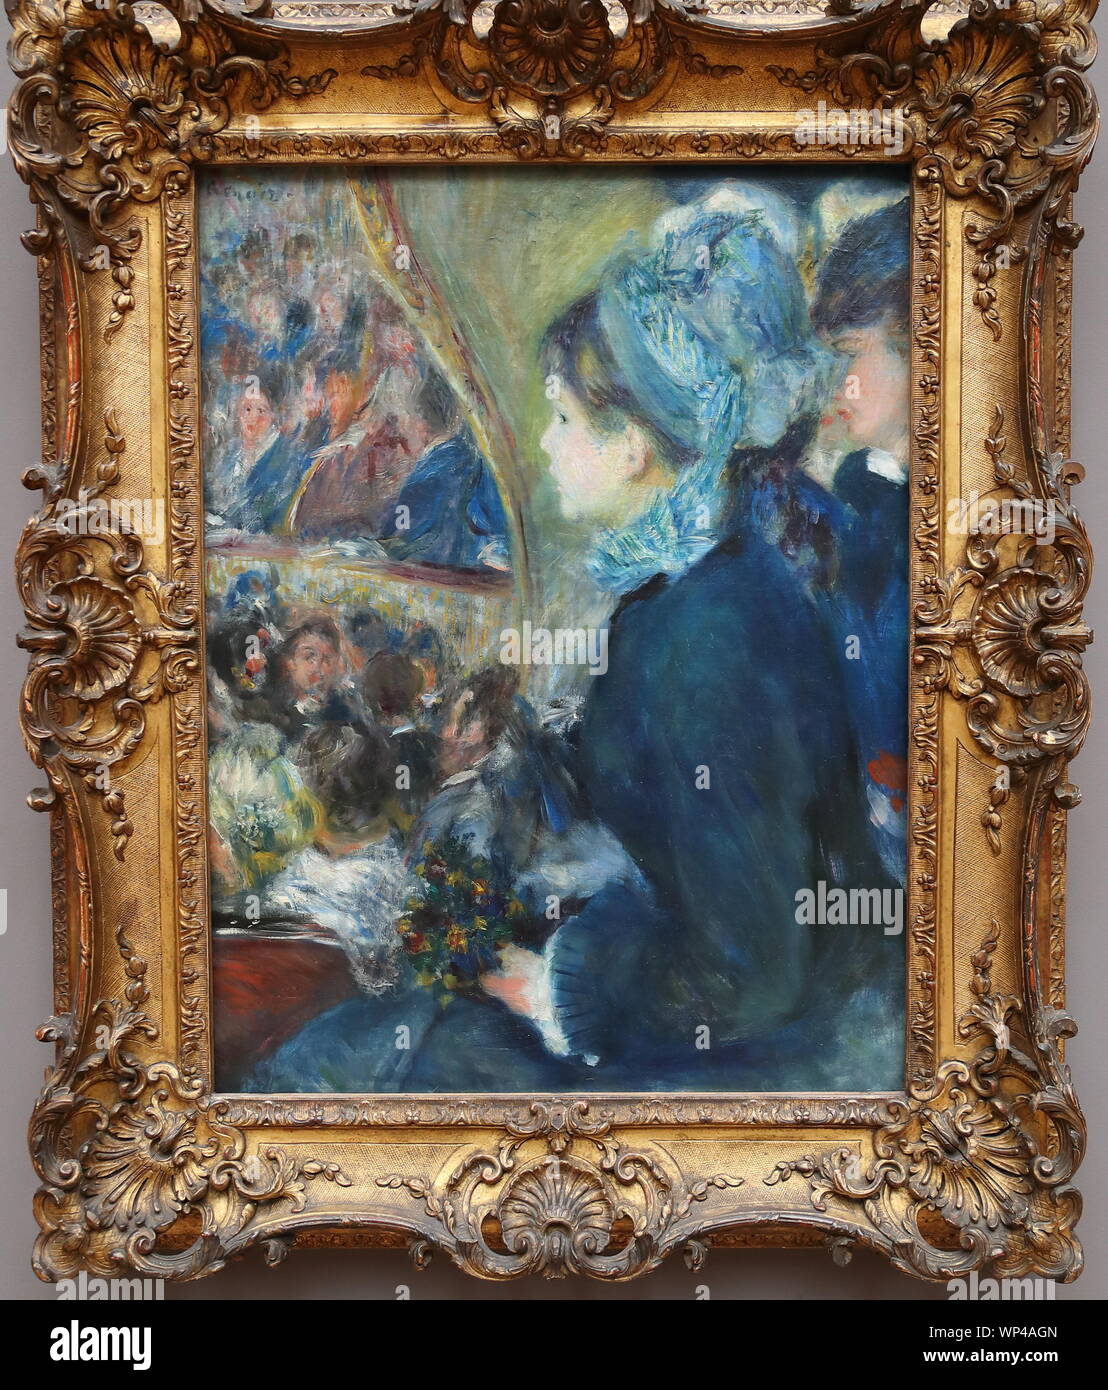 Presso il Teatro (La premiere sortie) dal francese pittore impressionista Pierre-Auguste Renoir presso la National Gallery di Londra, Regno Unito Foto Stock